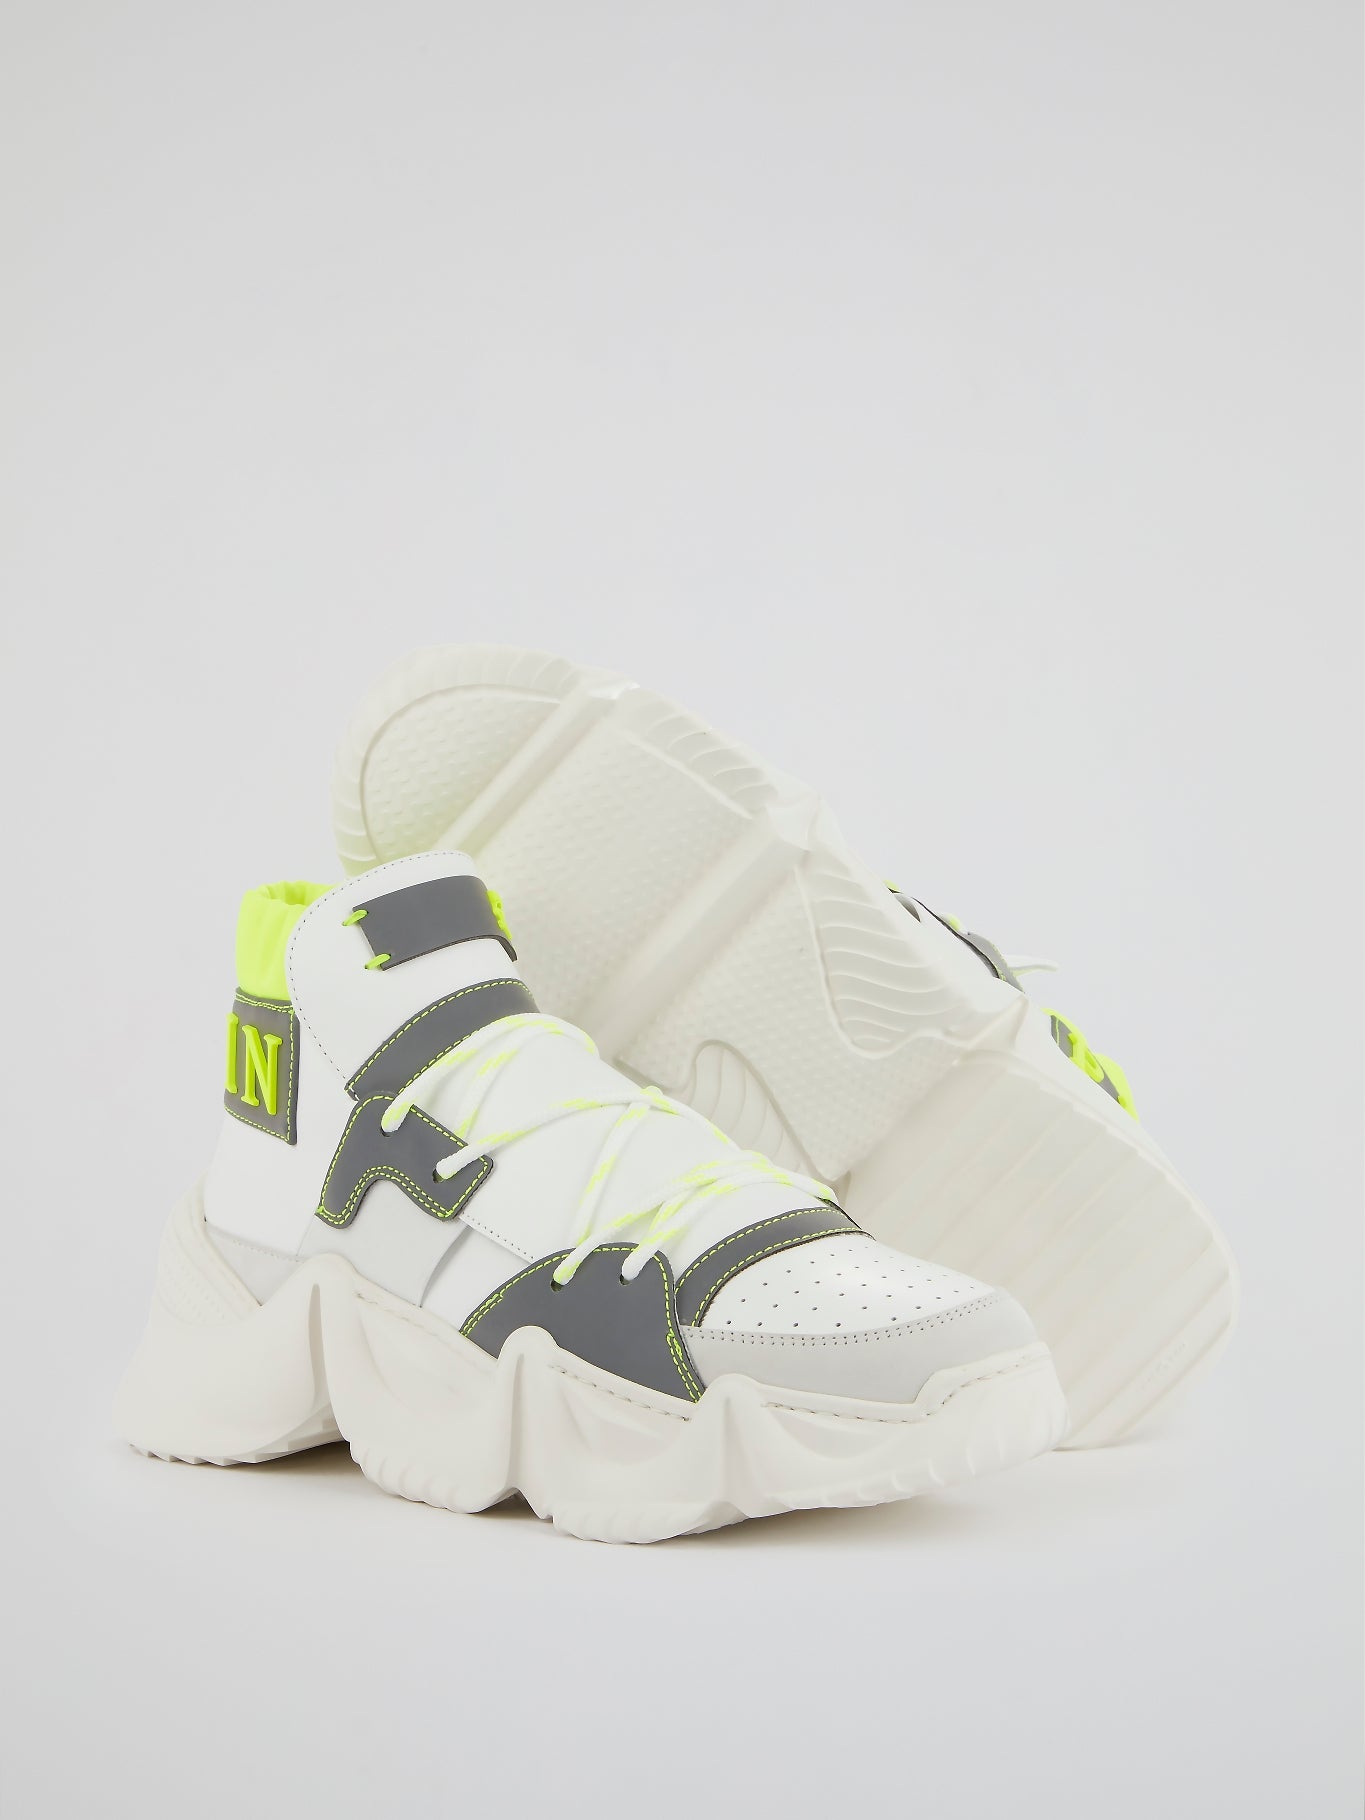 White Runner Monster 0.2 High Top Sneakers